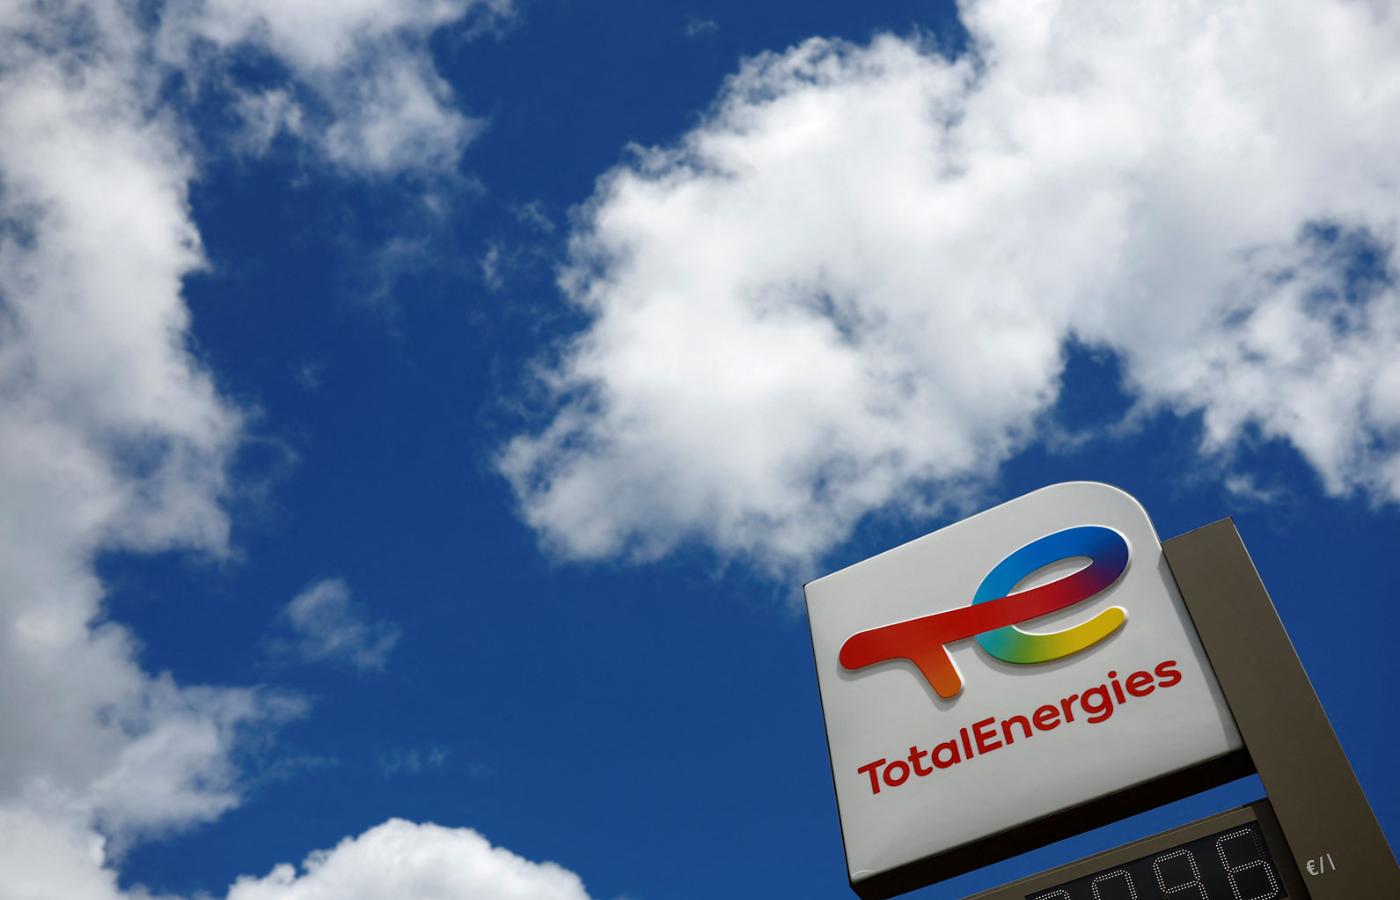 Francuski koncern paliwowy TotalEnergies nie wycofał się z interesów z Rosją – to wynik śledztwa dziennika „Le Monde”